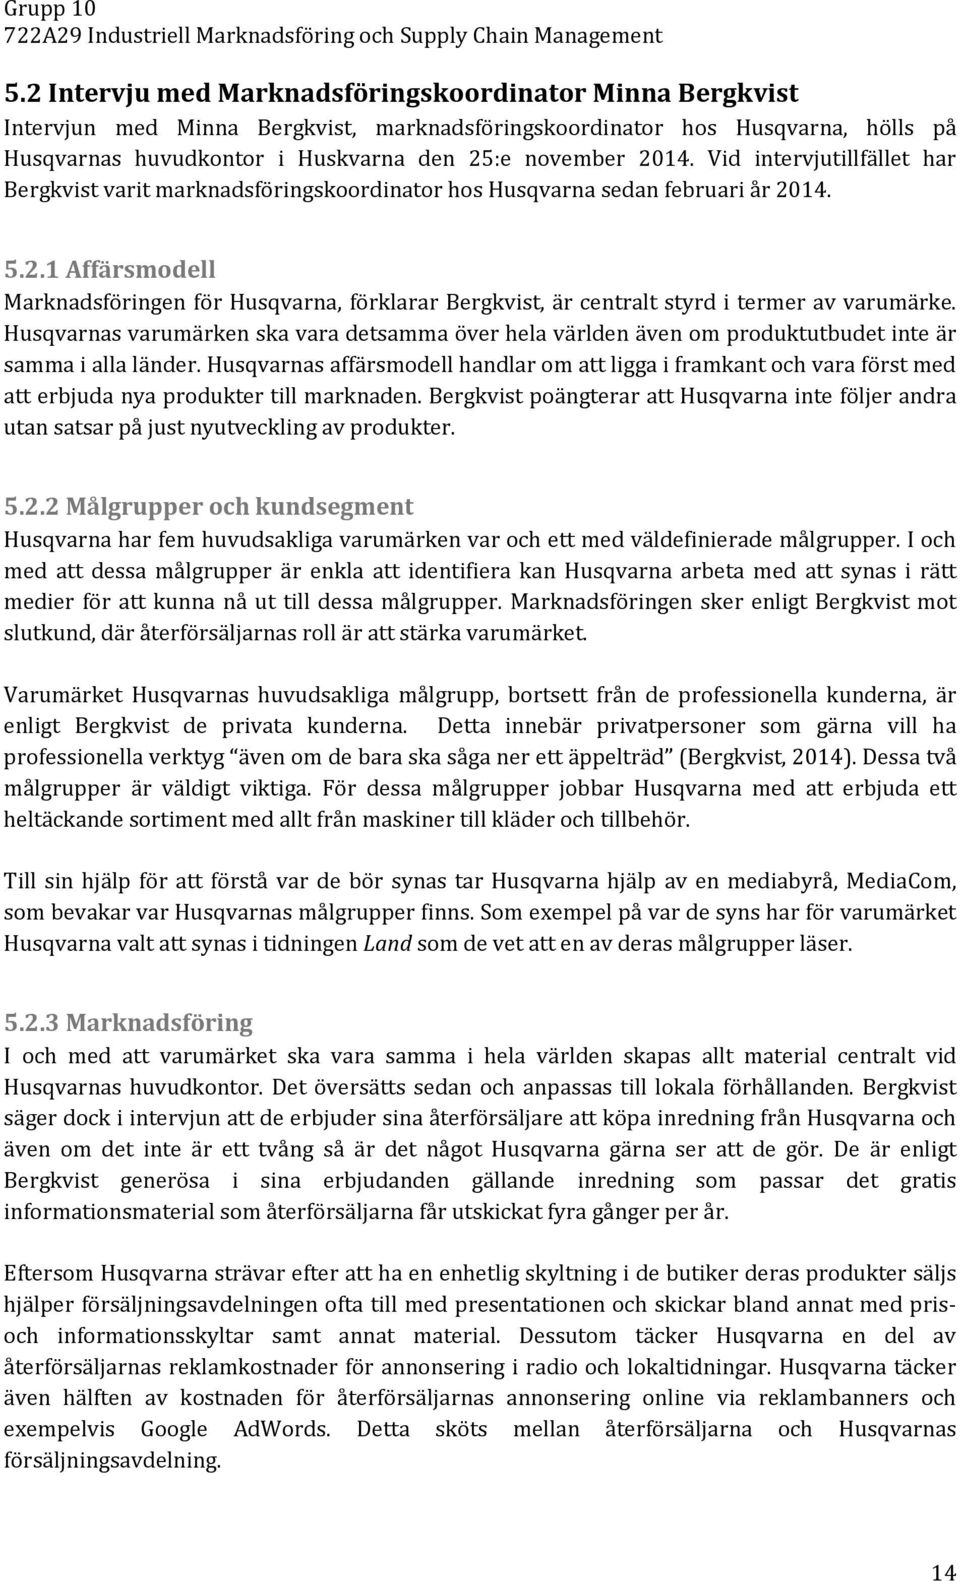 722A29 Industriell Marknadsföring och Supply Chain Management HT 2014  Handledare: Håkan Aronsson - PDF Gratis nedladdning